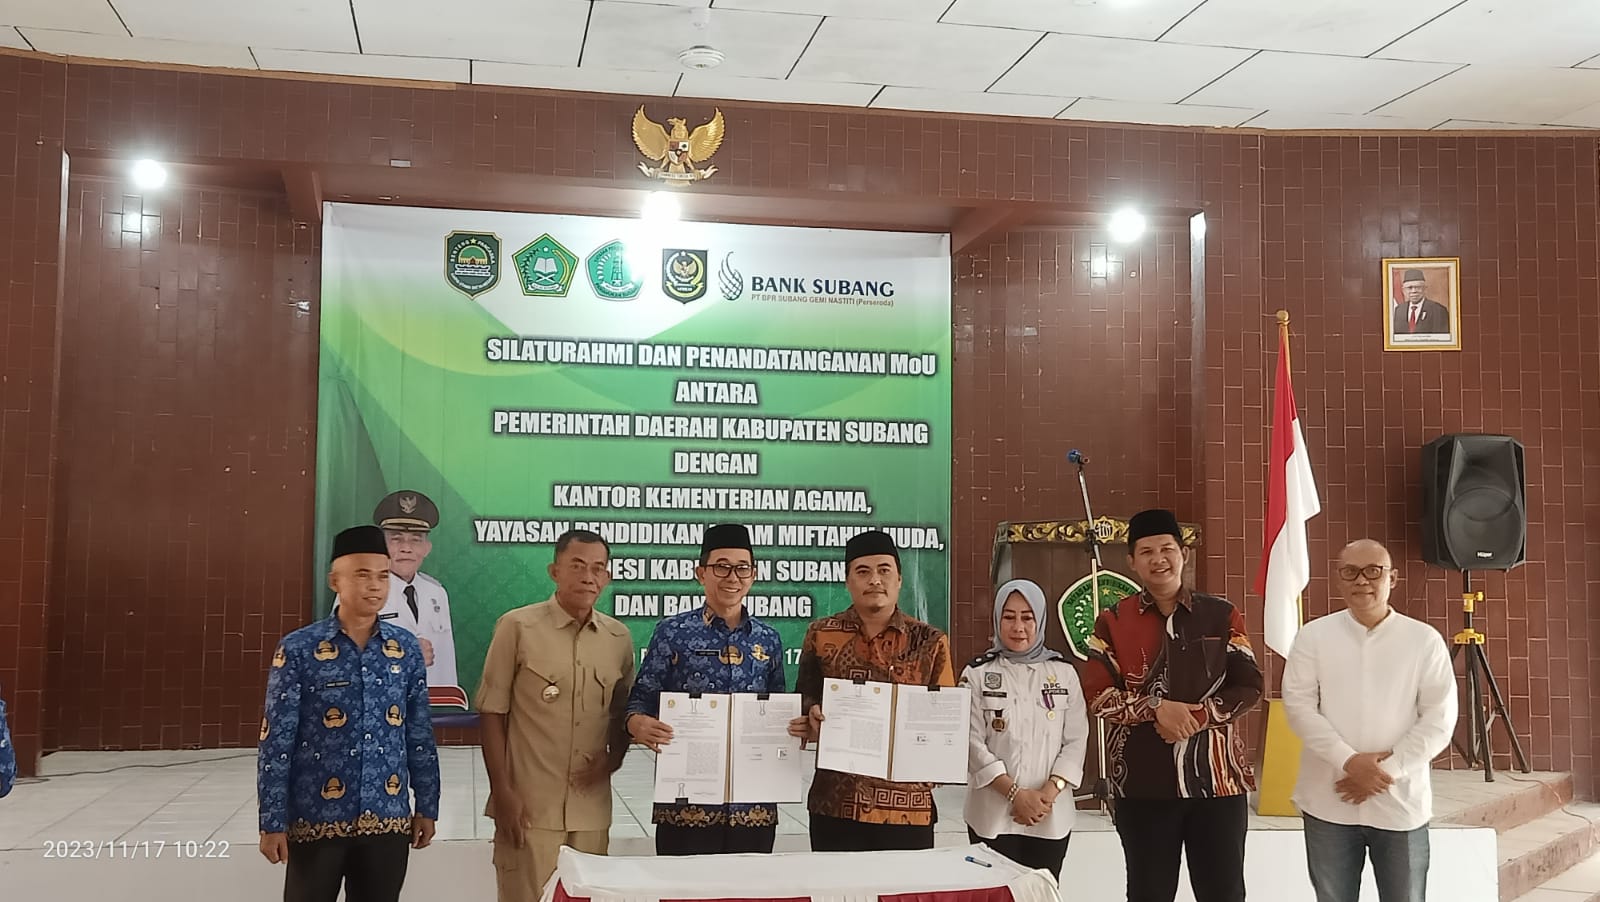 Silaturahmi dan Penandatangan Mou Antara Pemerintah Daerah Kabupaten Subang dengan Yayasan Pendidikan Islam Miftahul Huda Pamanukan Subang